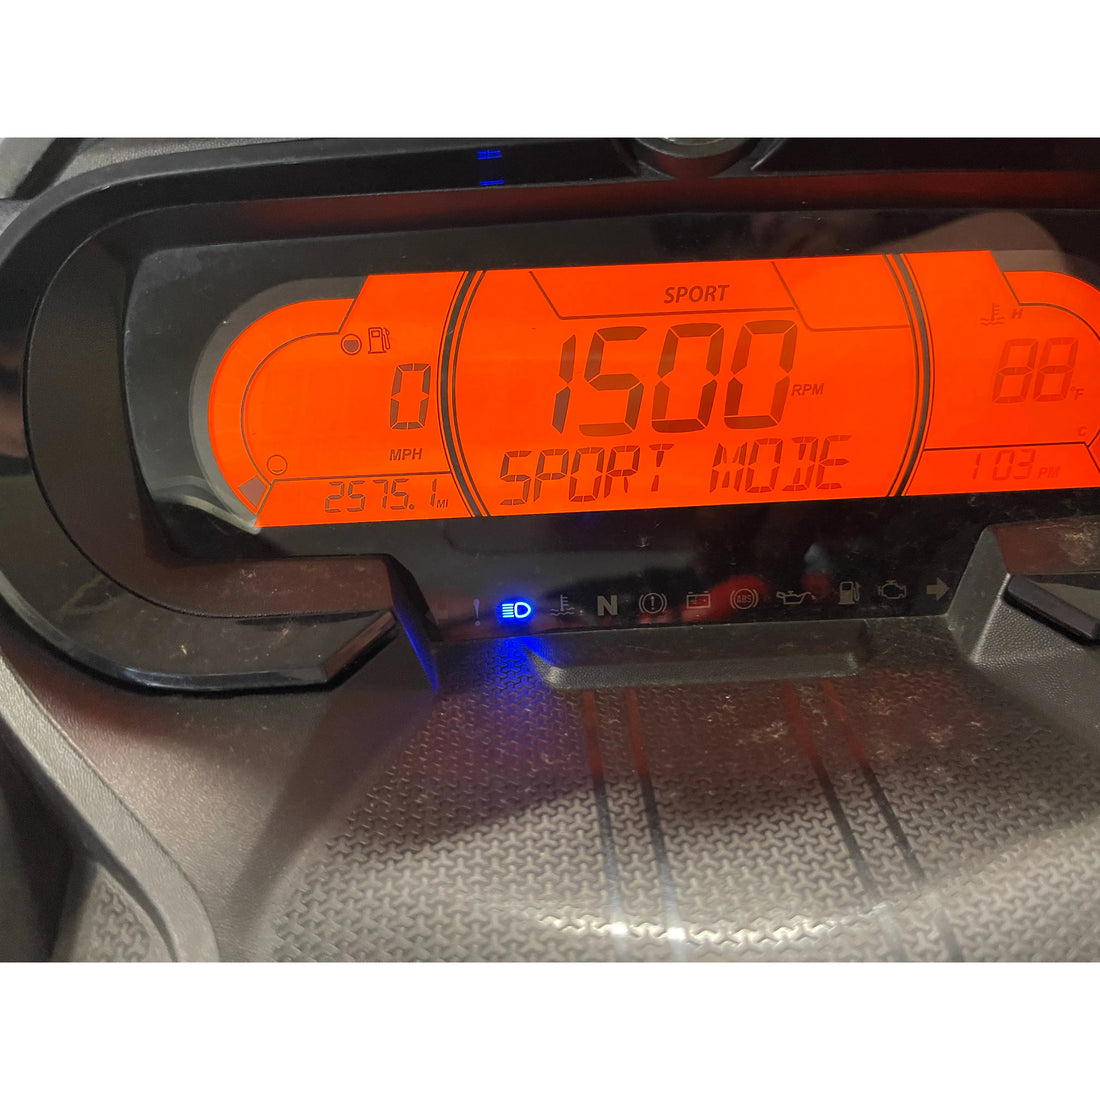 2020 Skidoo Renegade XRS 900 Turbo 2575mi